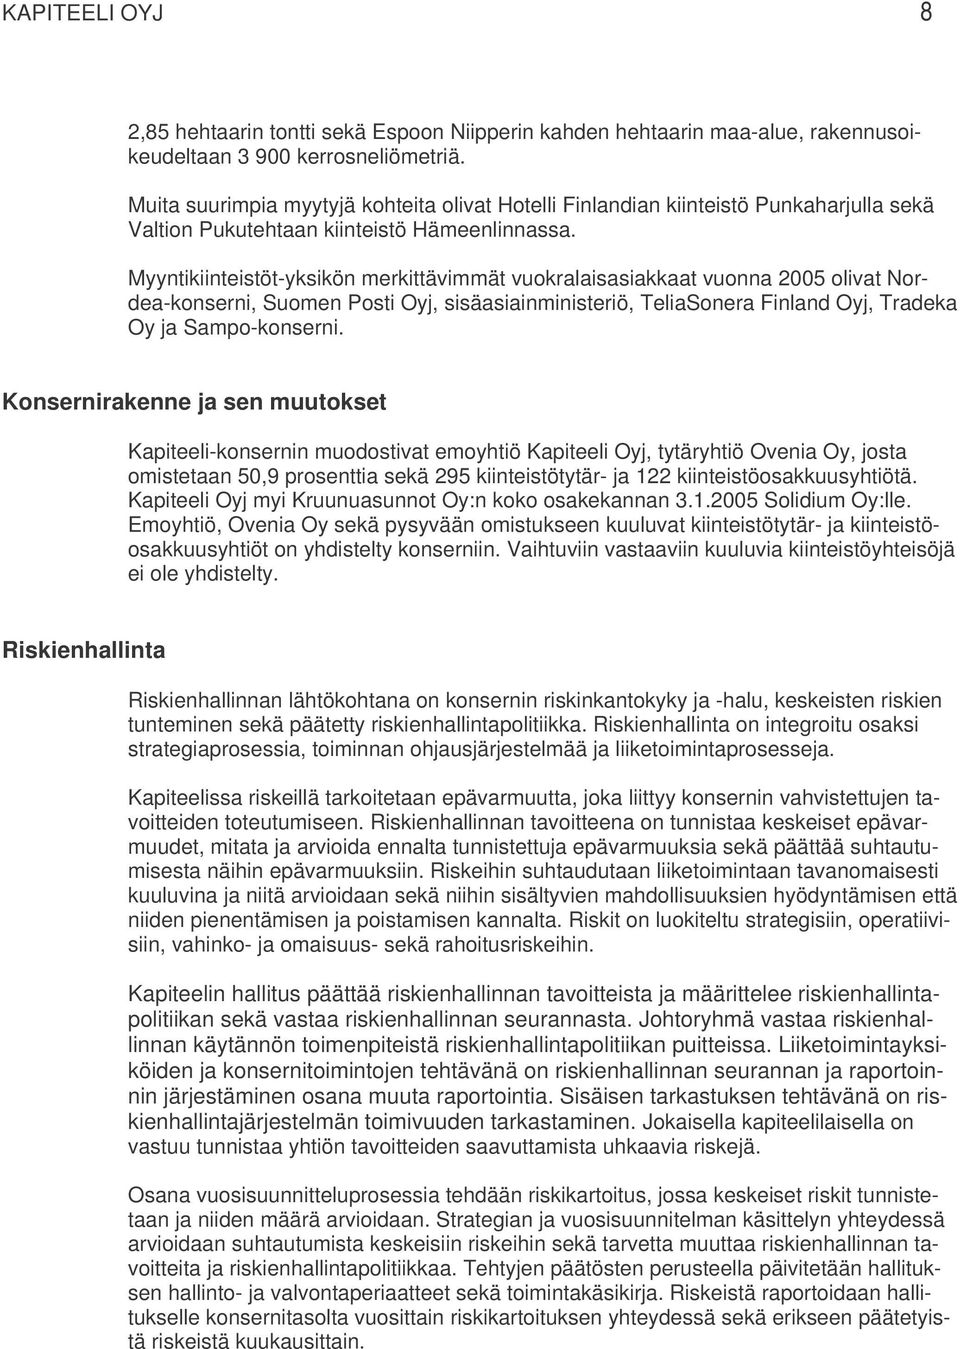 Myyntikiinteistöt-yksikön merkittävimmät vuokralaisasiakkaat vuonna 2005 olivat Nordea-konserni, Suomen Posti Oyj, sisäasiainministeriö, TeliaSonera Finland Oyj, Tradeka Oy ja Sampo-konserni.